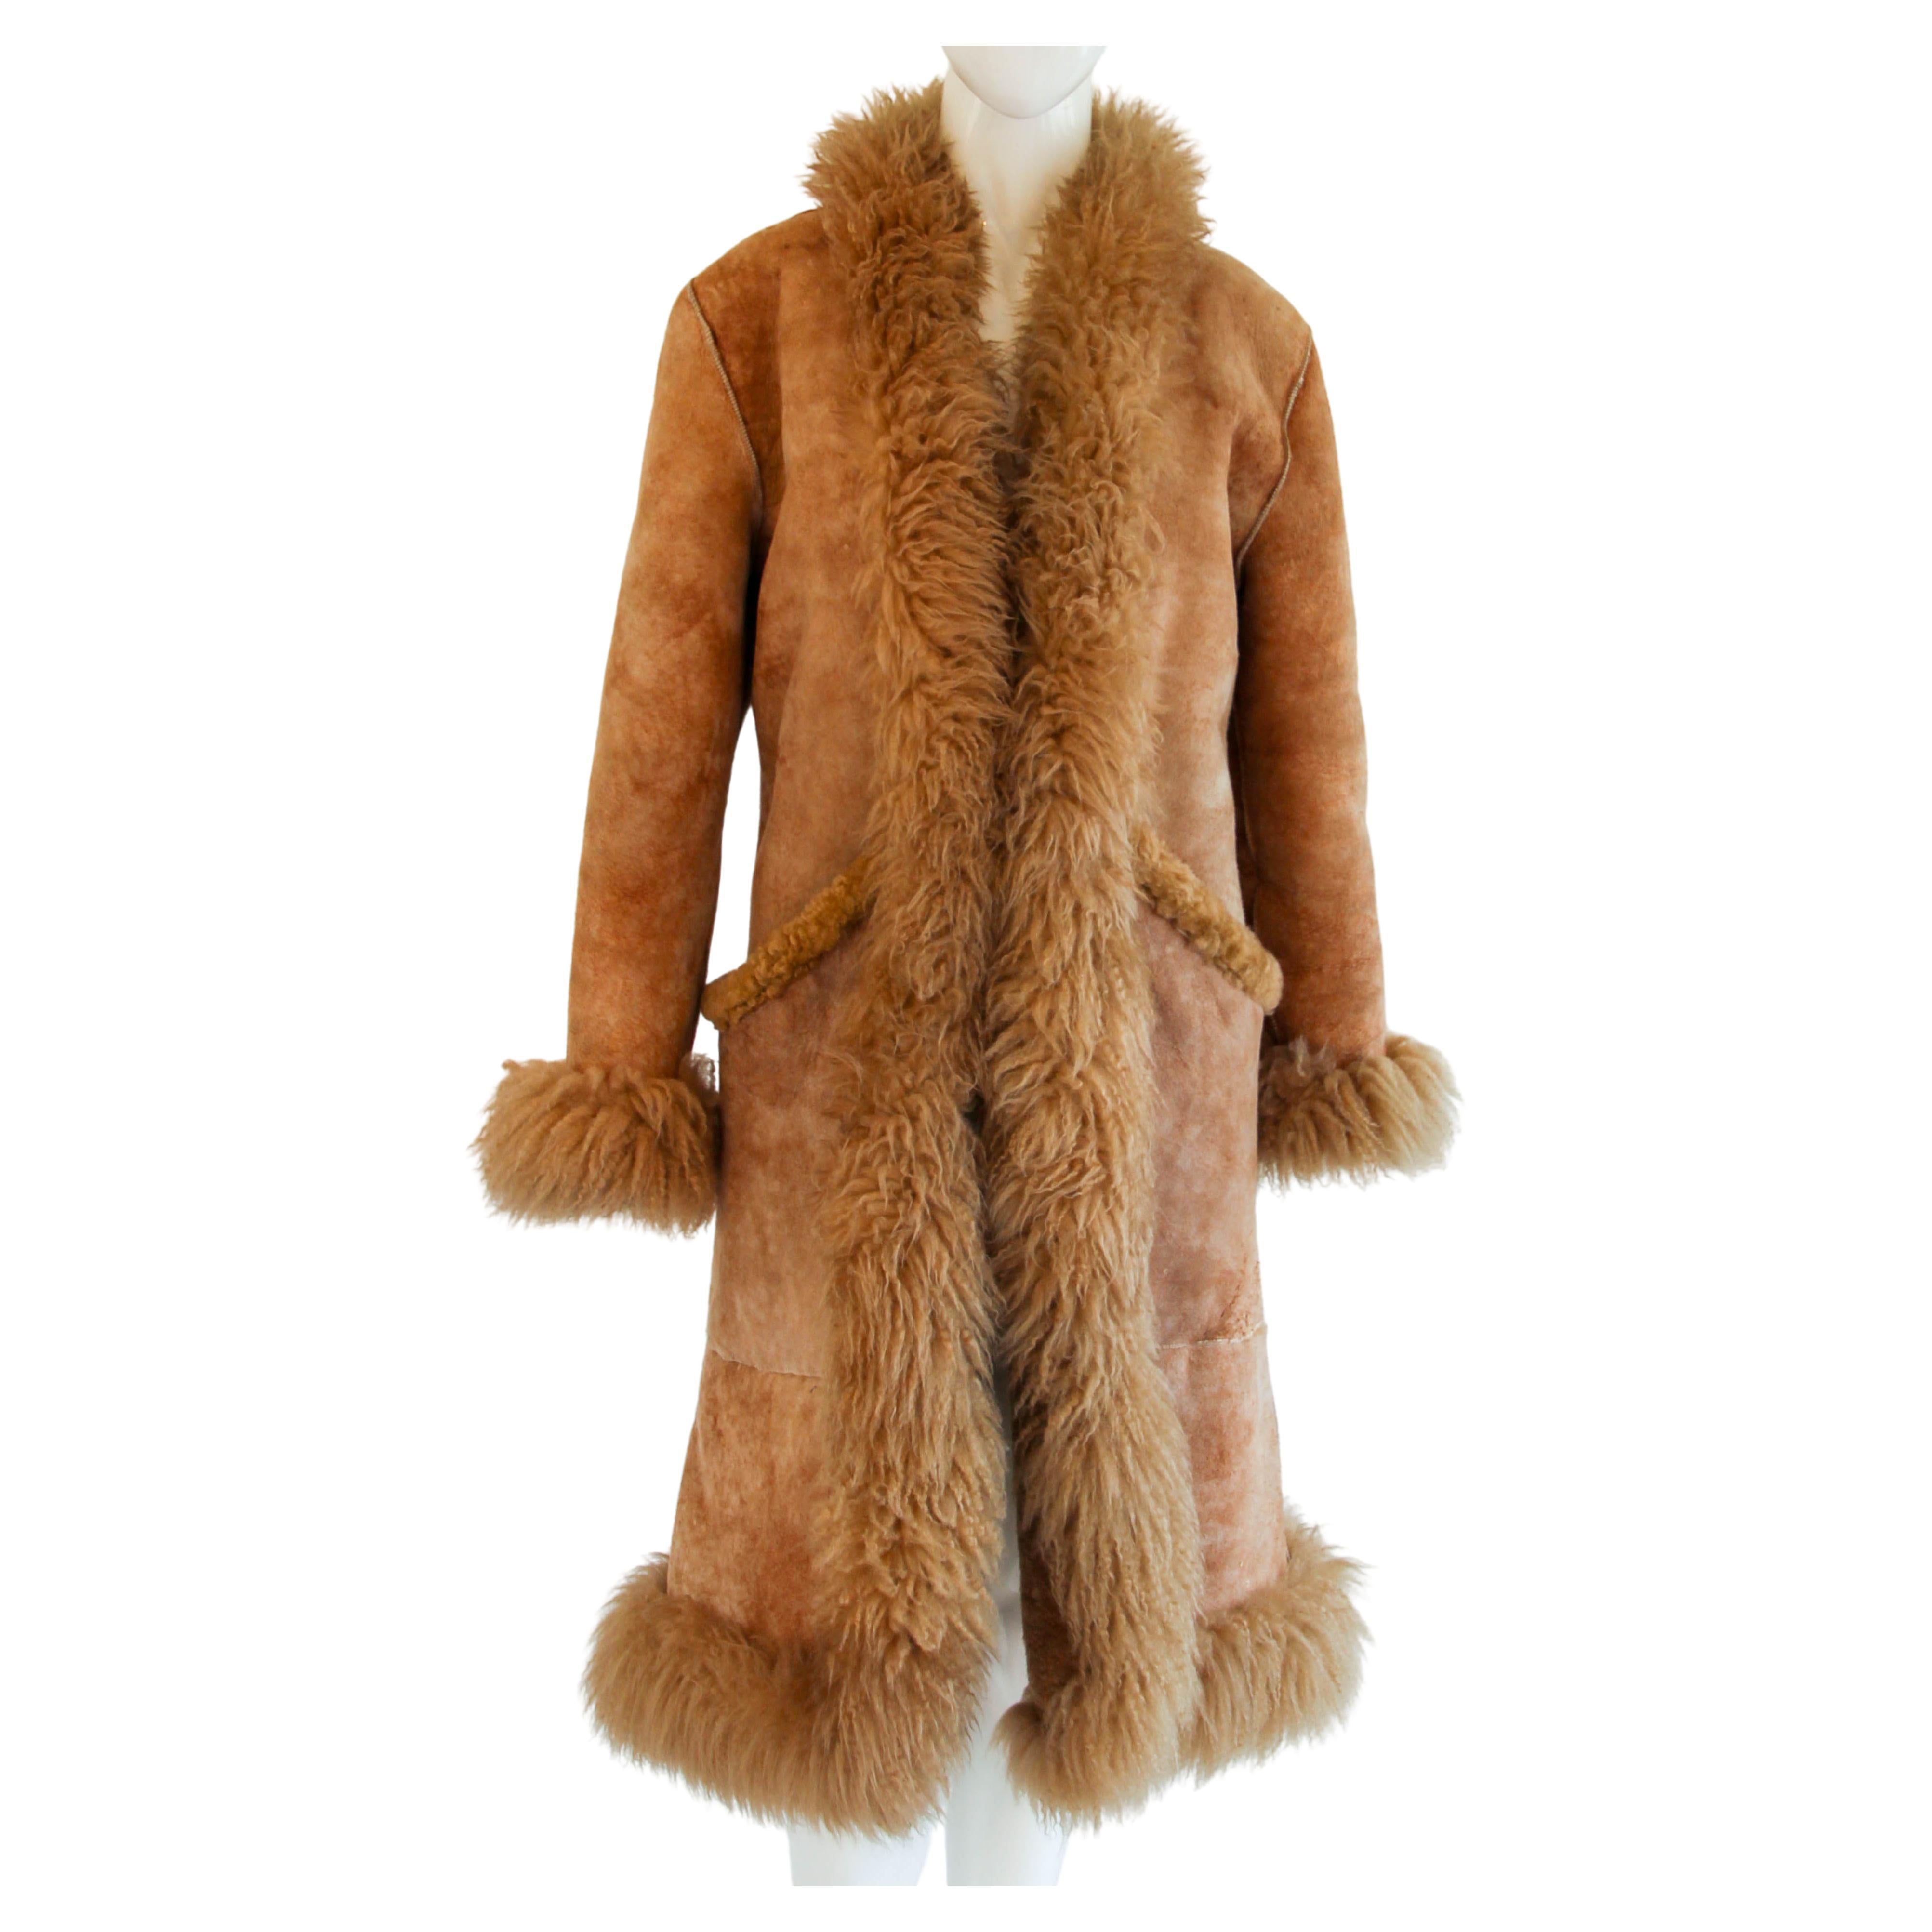 Brauner Vintage-Mantel aus Schafsfell, Australien, 1970er Jahre, Größe Small bis Medium im Angebot